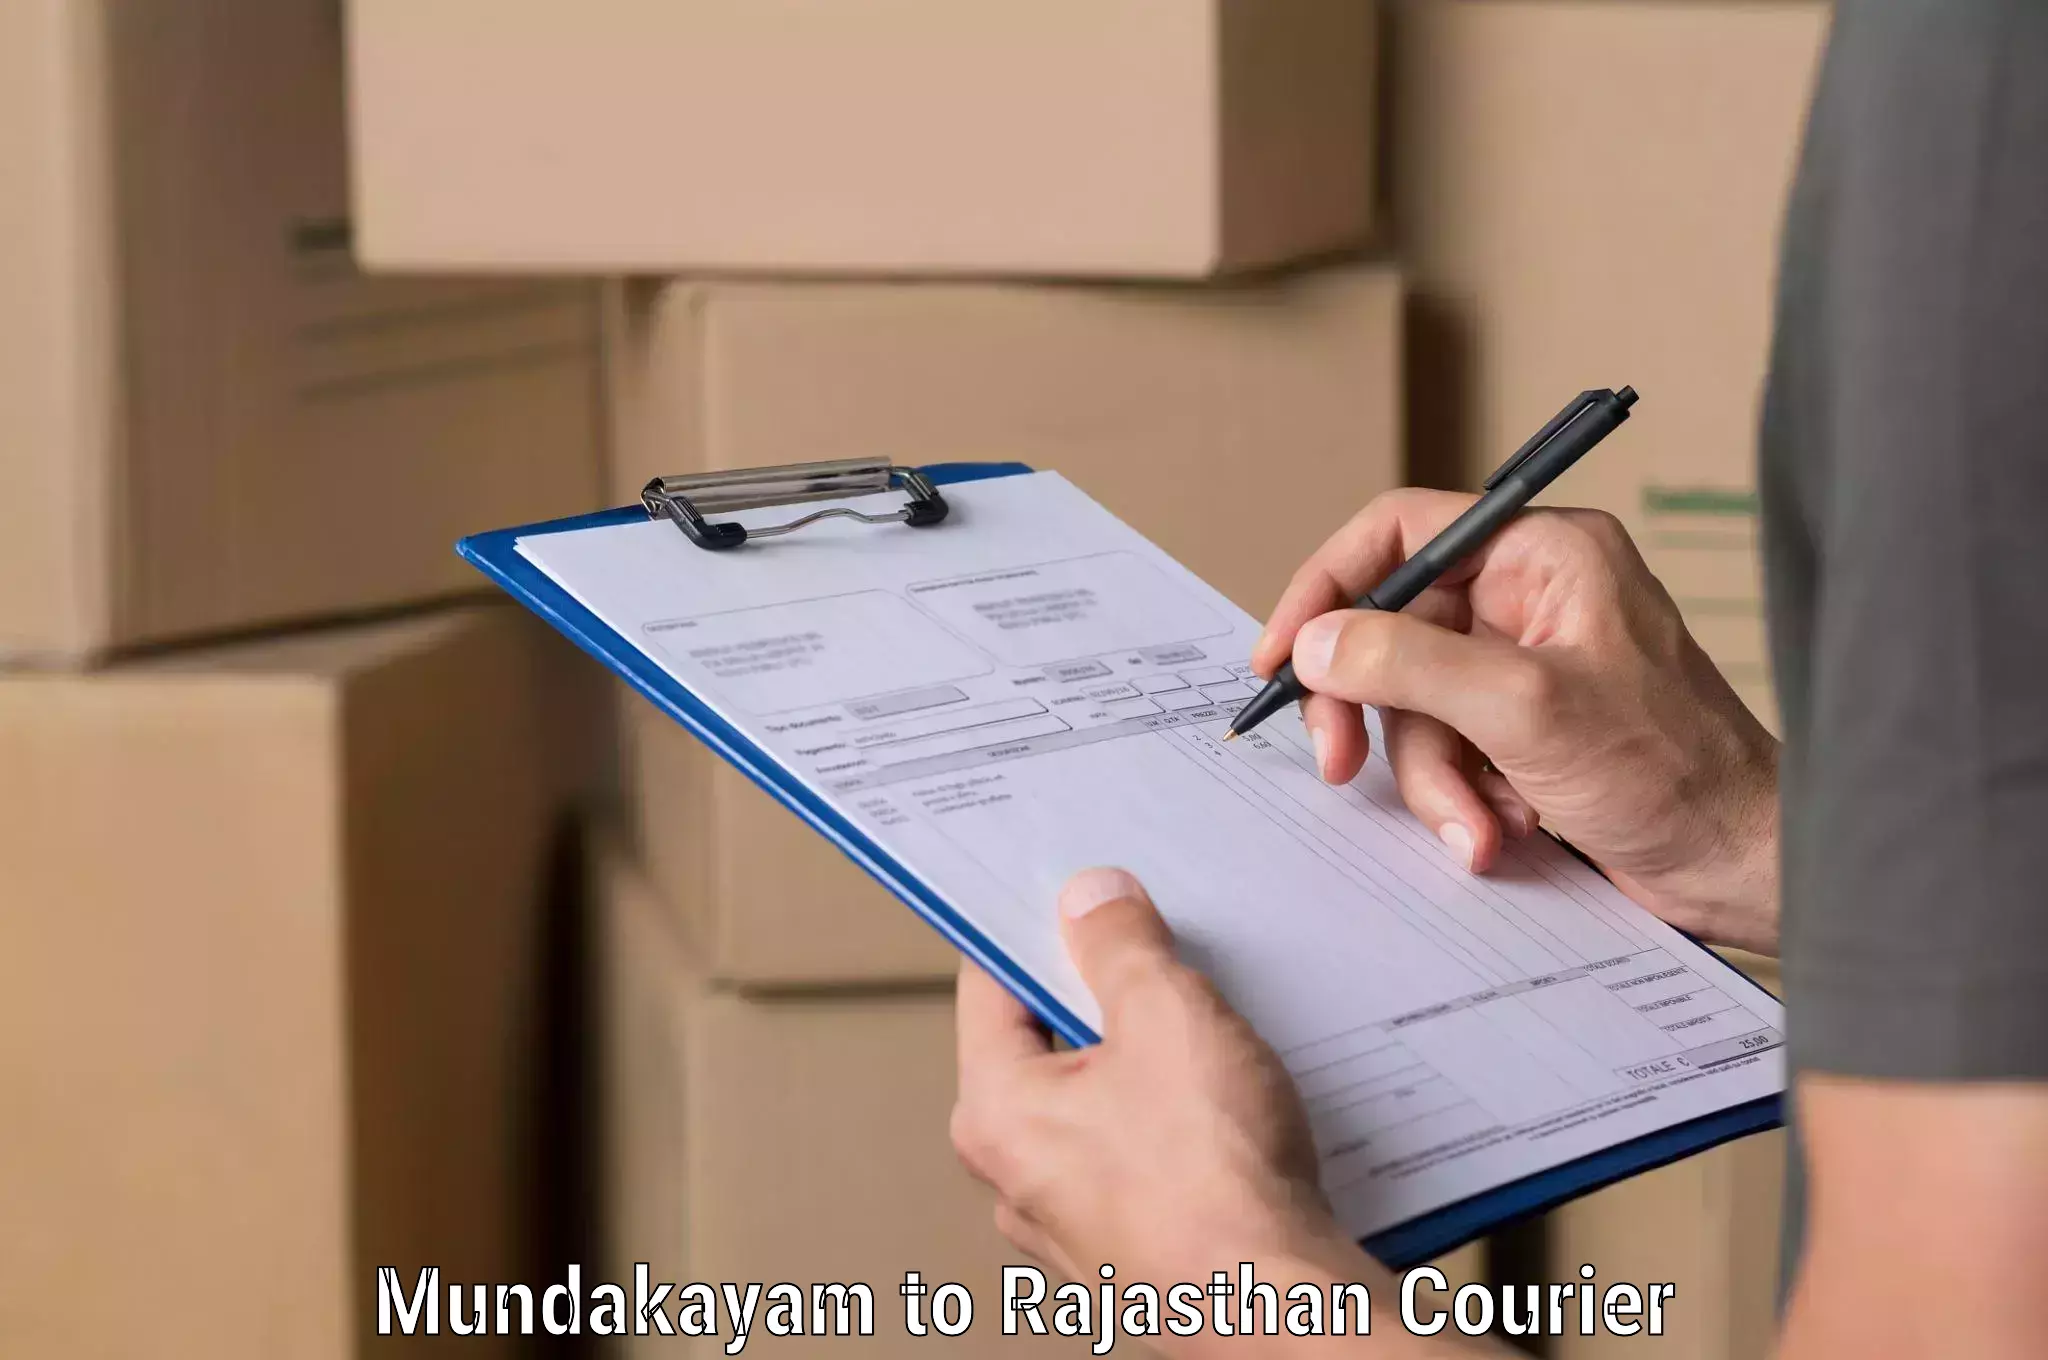 Shipping and handling Mundakayam to Taranagar